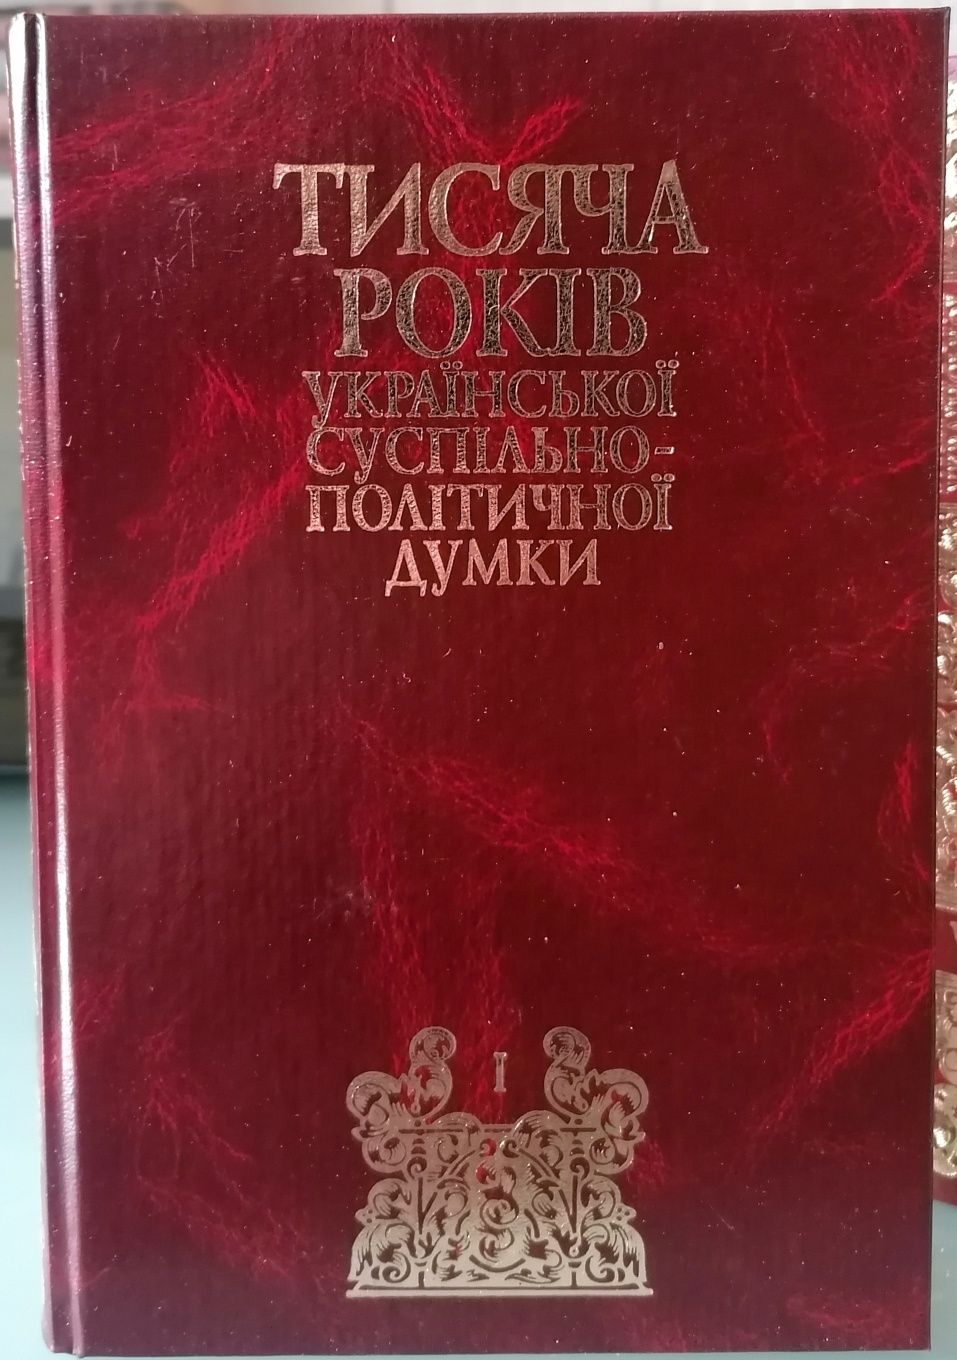 Тисяча років української суспільно політичної думки 9 т (14 книг)